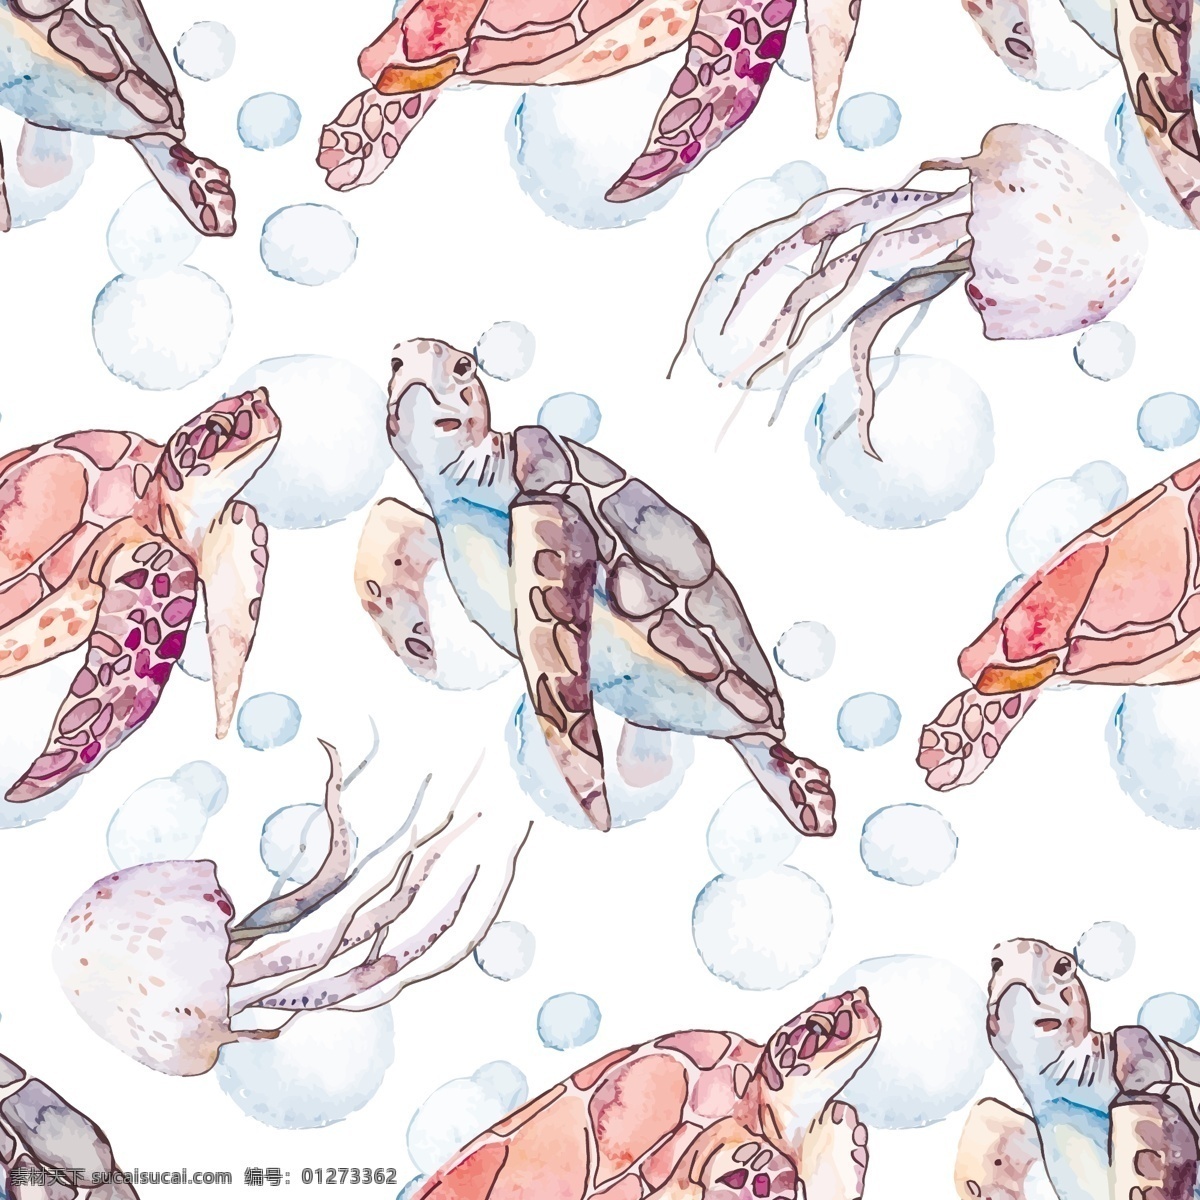 水彩 海龟 插画 背景 水彩画 乌龟插画 动物插画 海洋生物 卡通动物 水中生物 生物世界 矢量素材